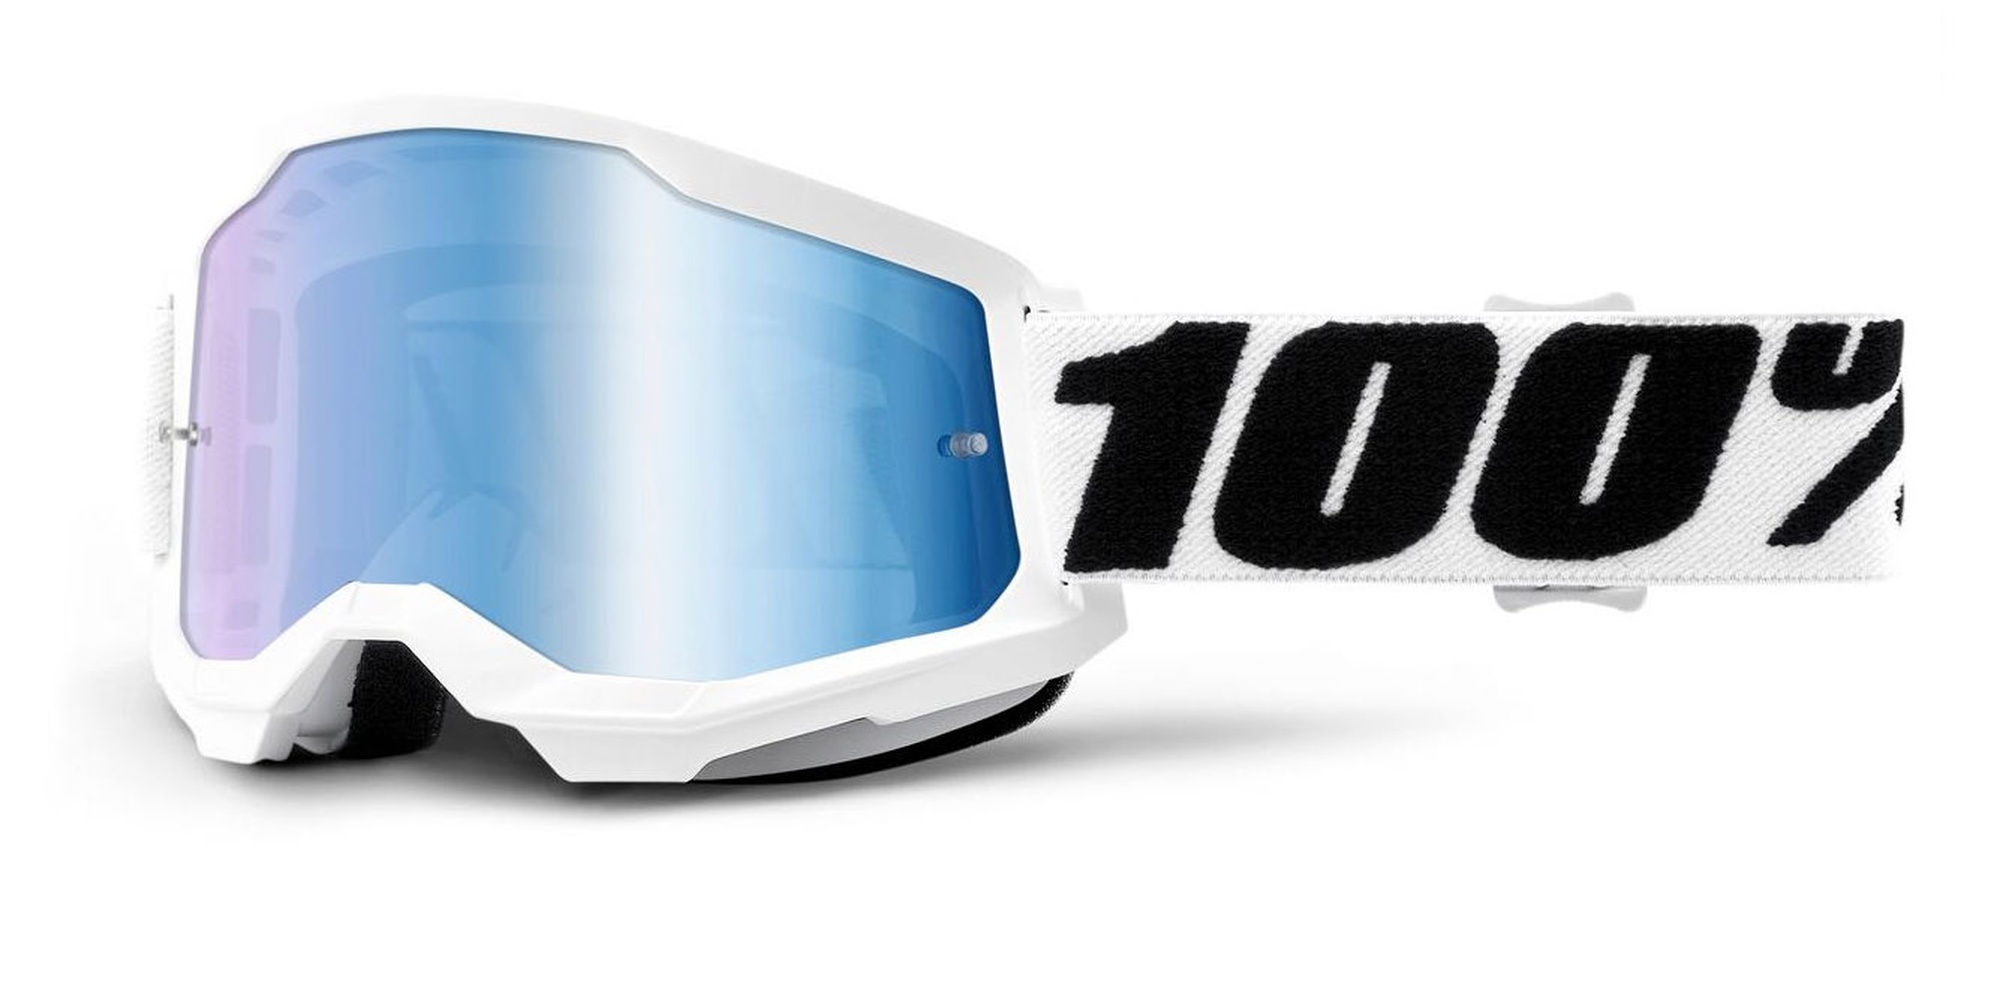 Obrázek produktu STRATA 2, 100% brýle Everest, zrcadlové modré plexi 50028-00009